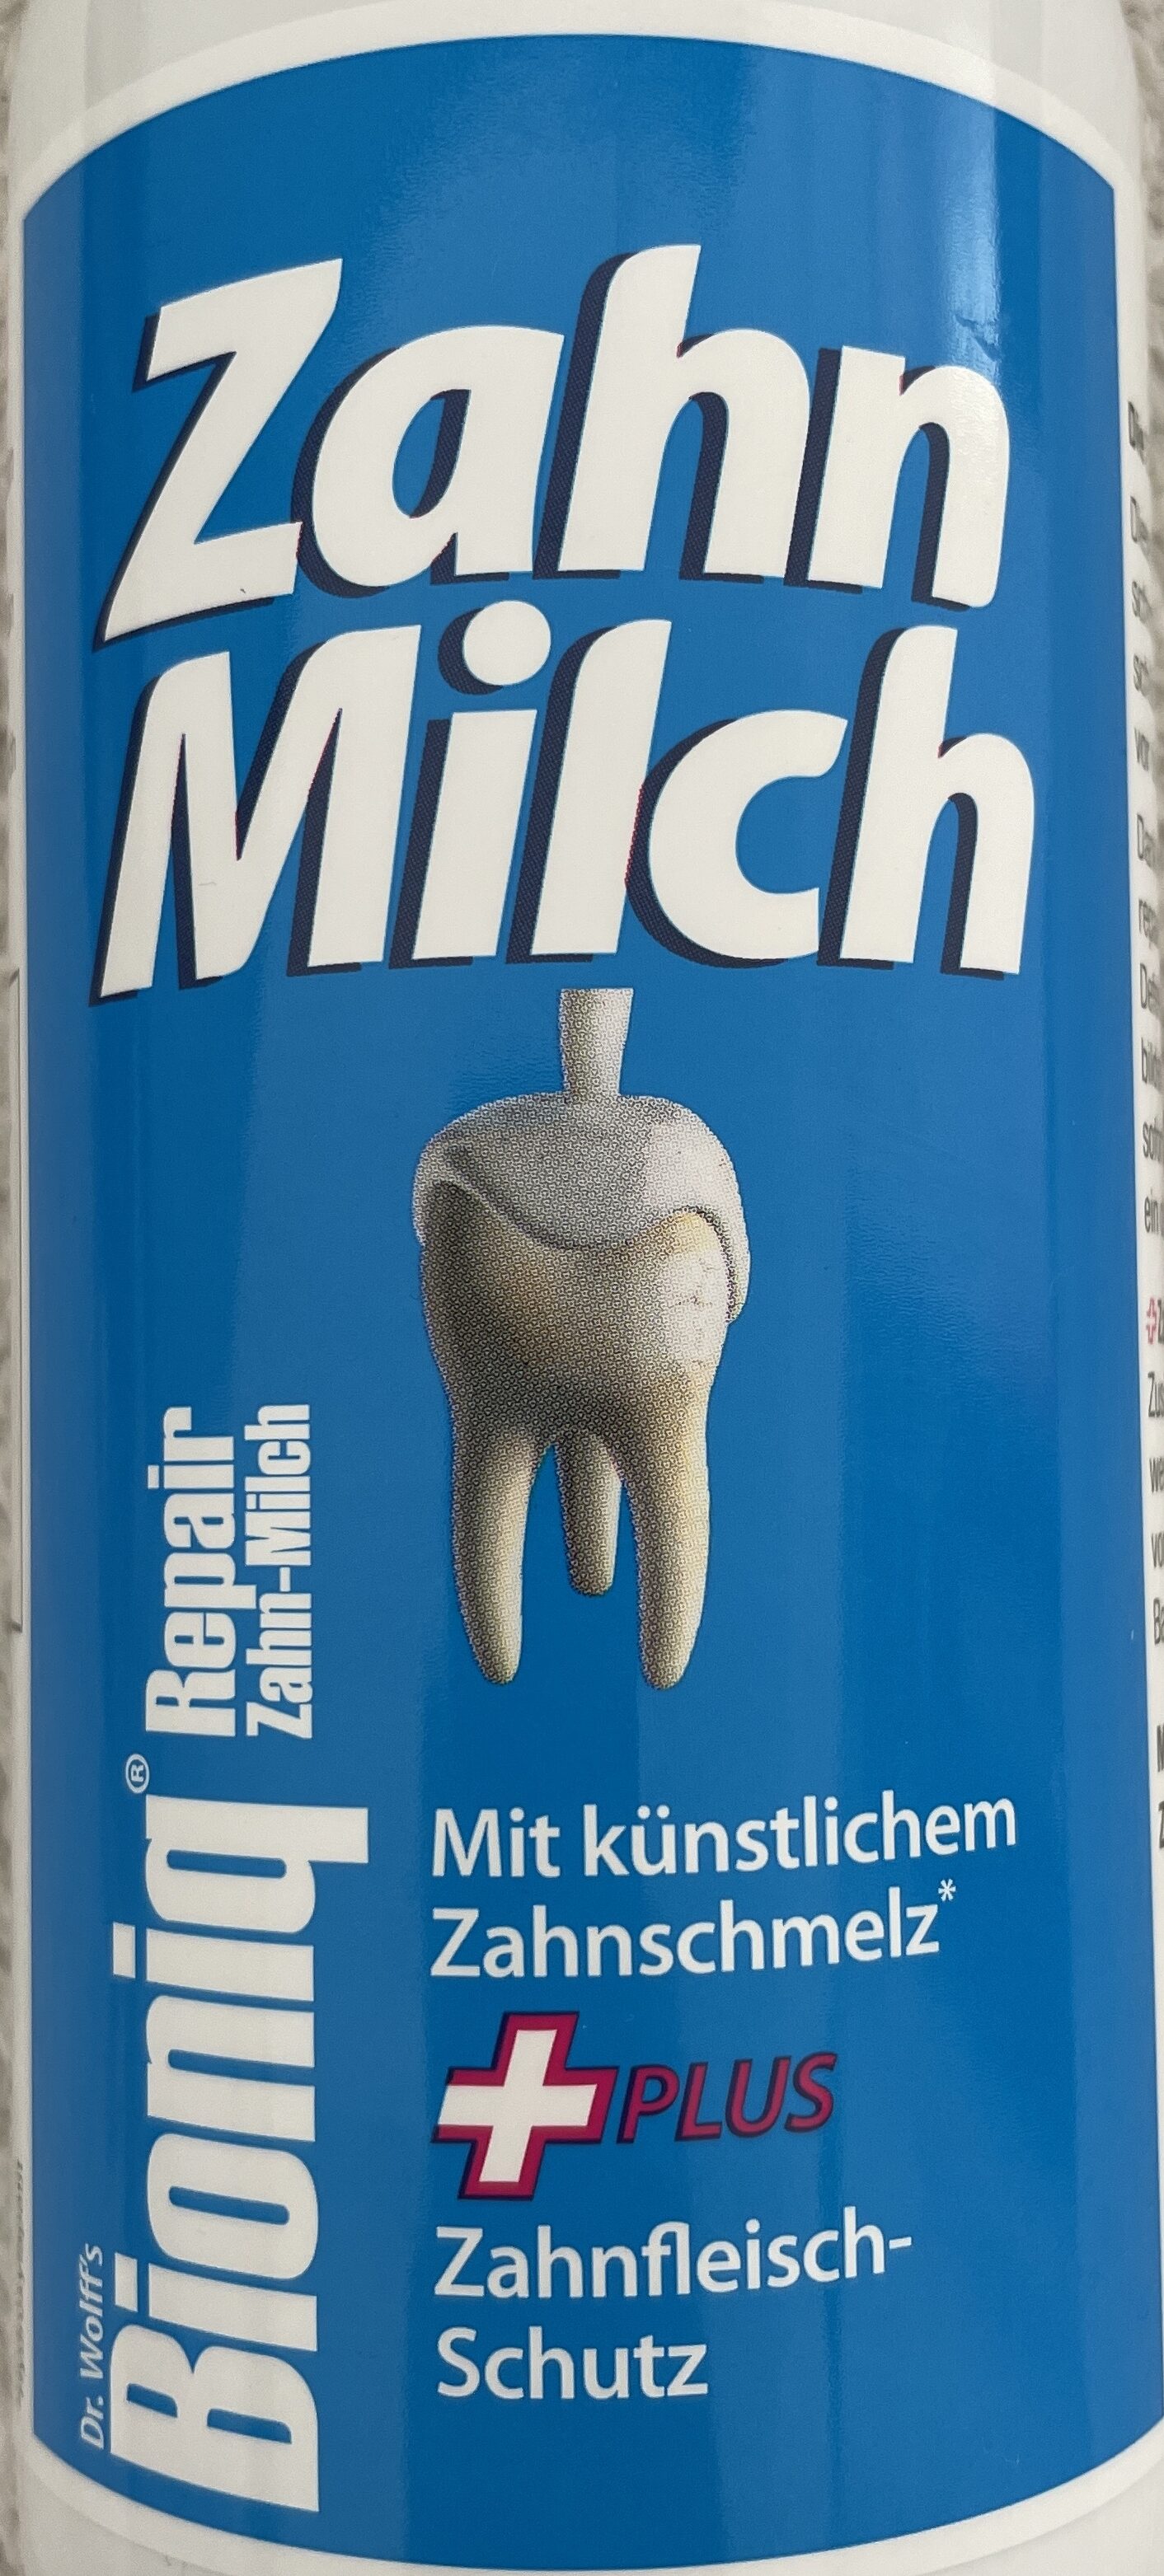 Repair Zahn-Milch - Produkt - de